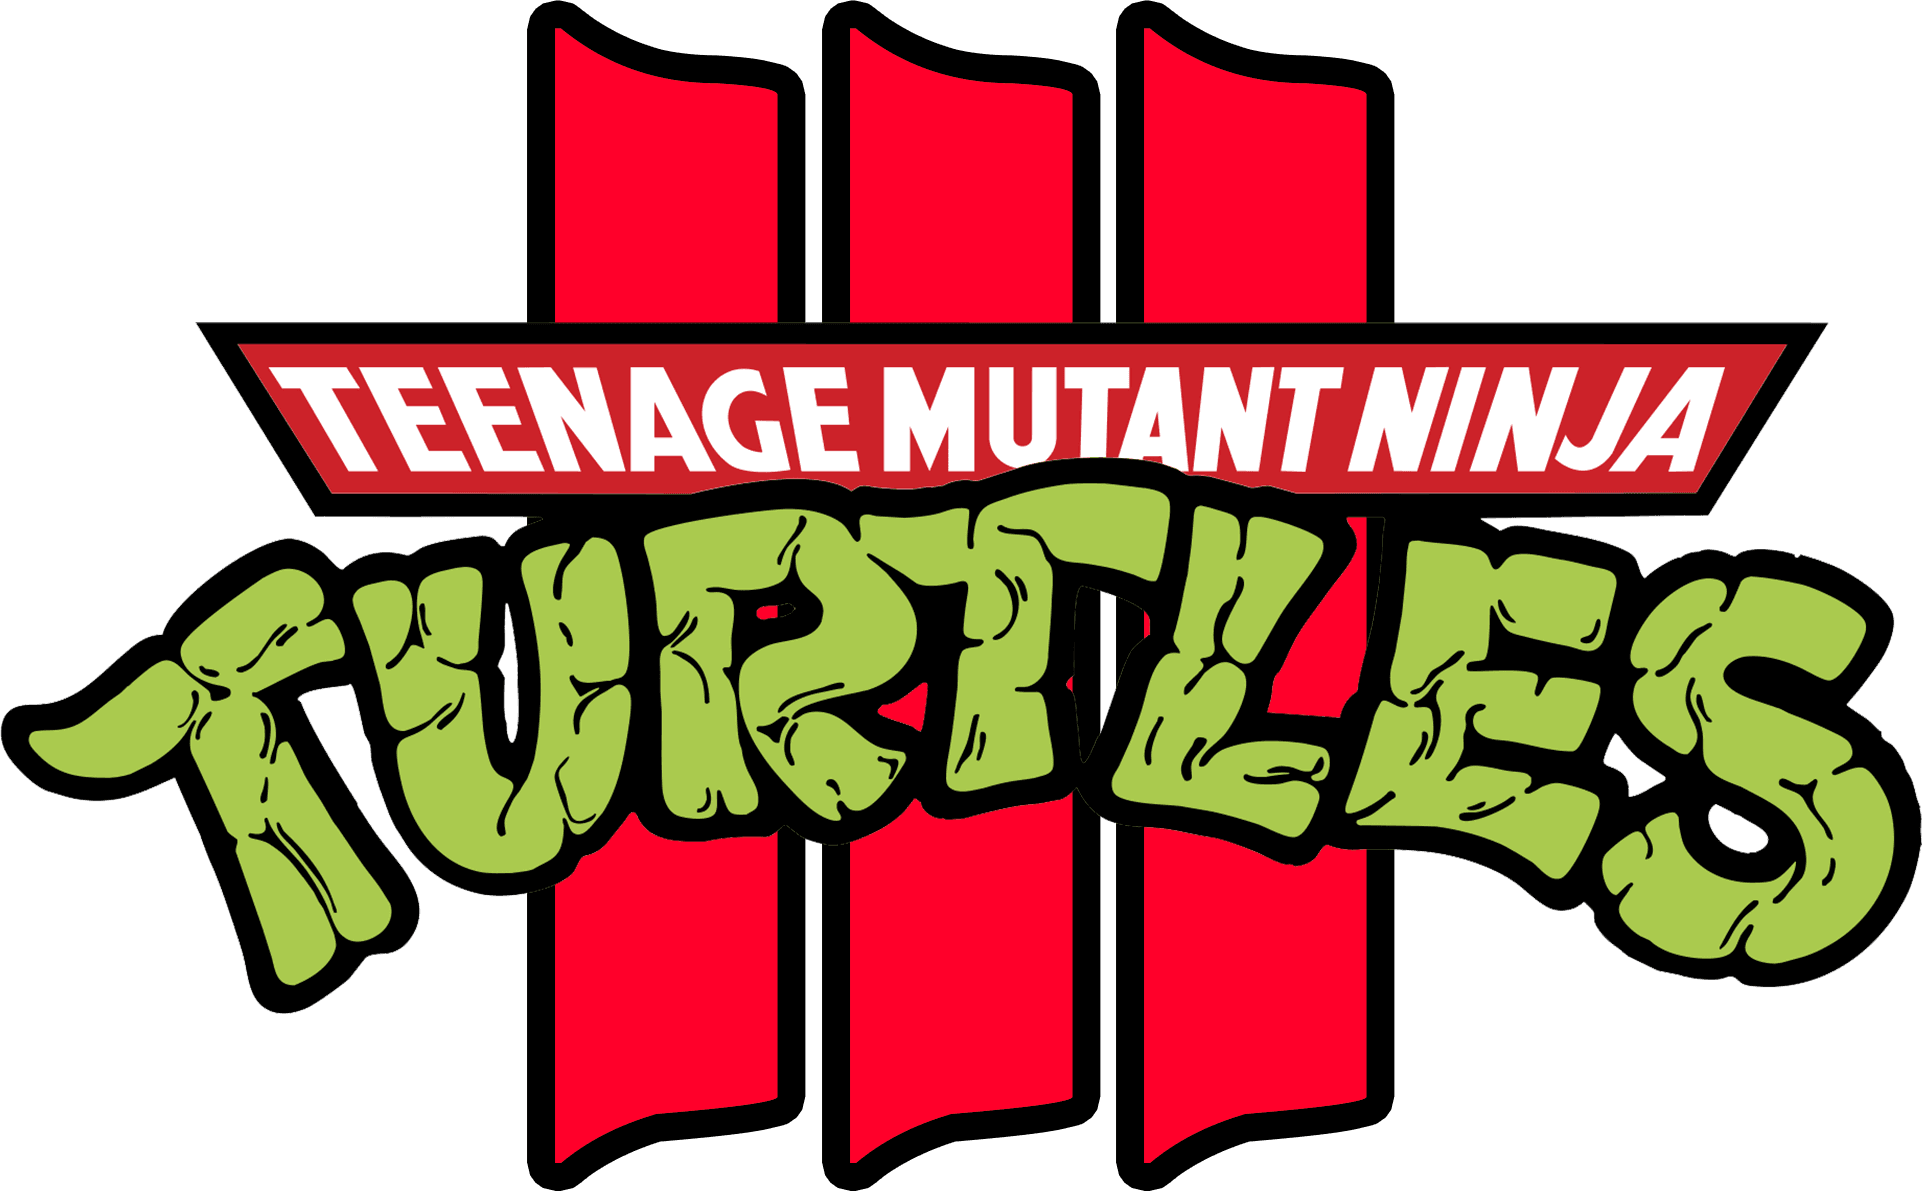 Teenage Mutant Ninja Turtles III logo